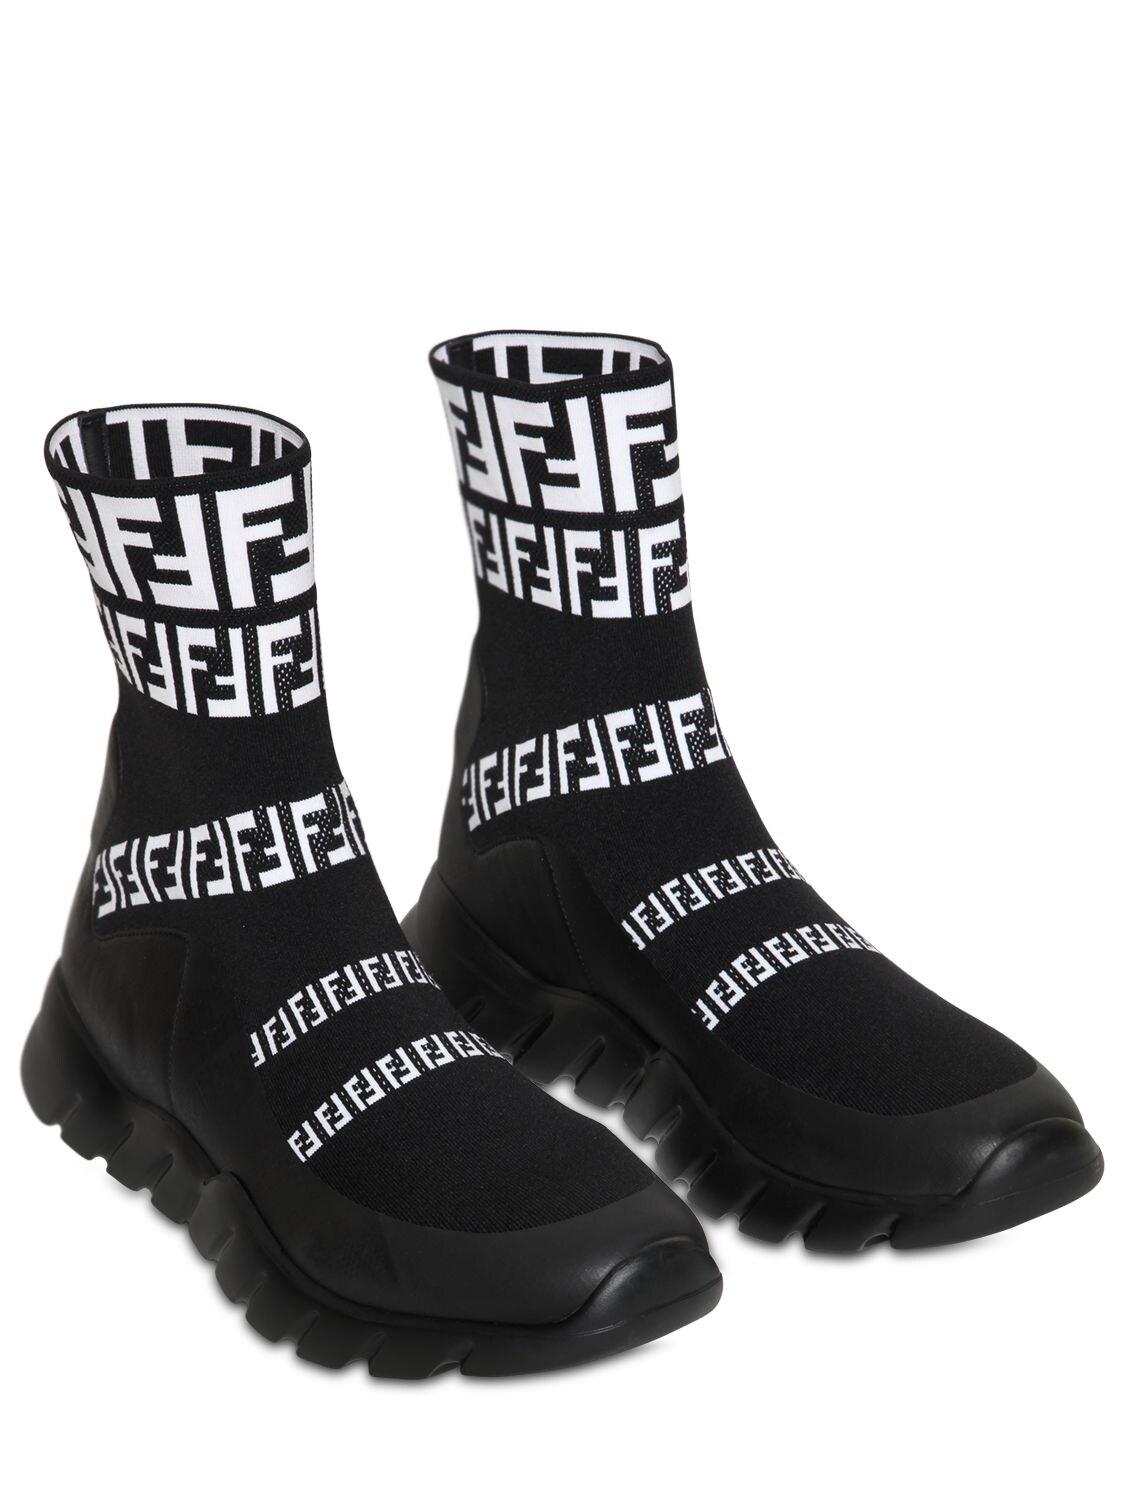 Fendi Ff Signature Socks Sneaker in Black/White (Black) for Men - Lyst